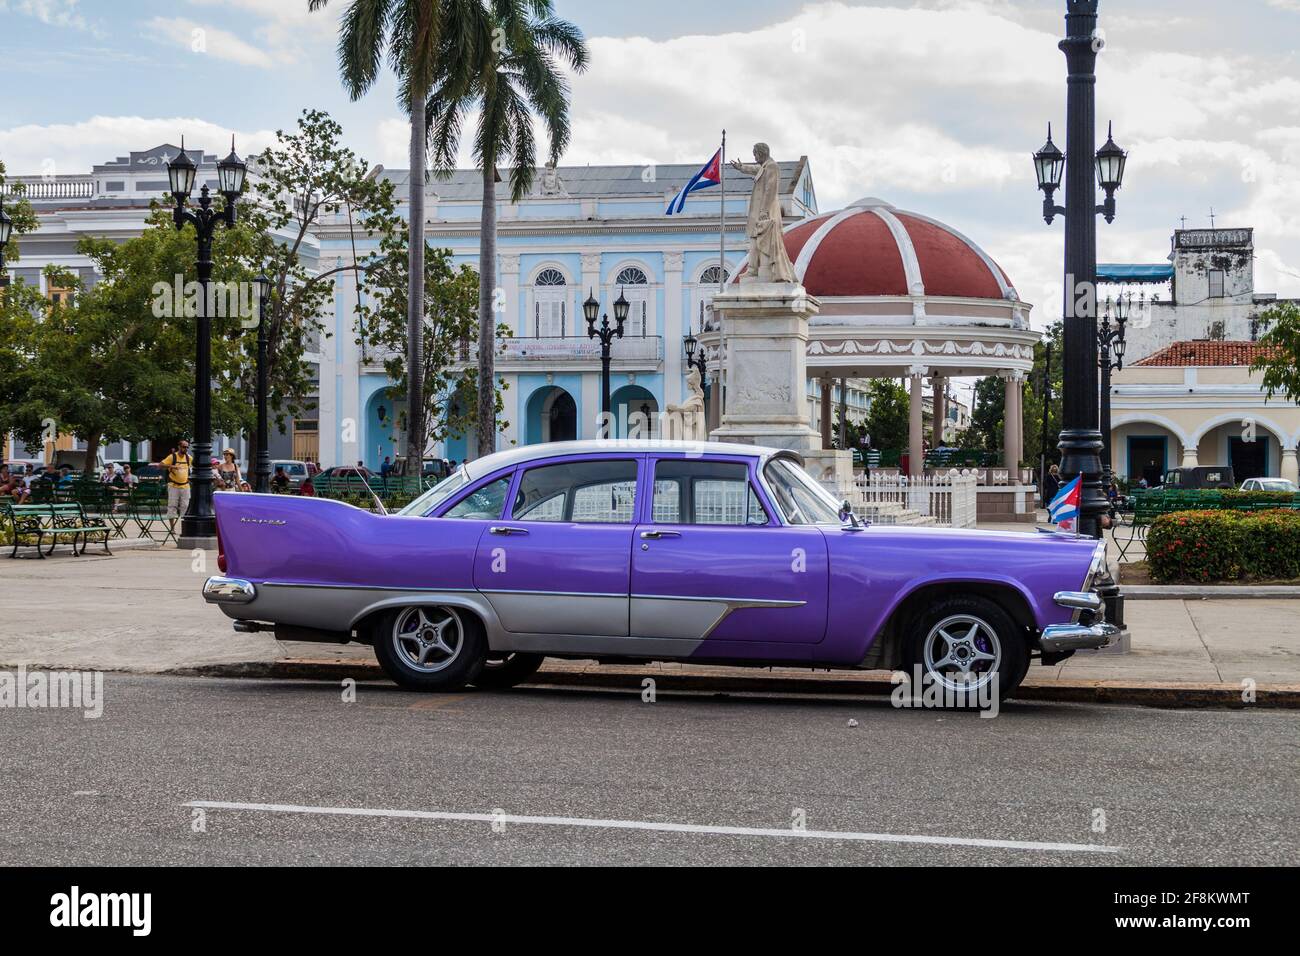 CIENFUEGOS, CUBA - 10 FÉVRIER 2016 : Dodge Kingsway vintage à la place Parque Jose Marti à Cienfuegos, Cuba. Banque D'Images